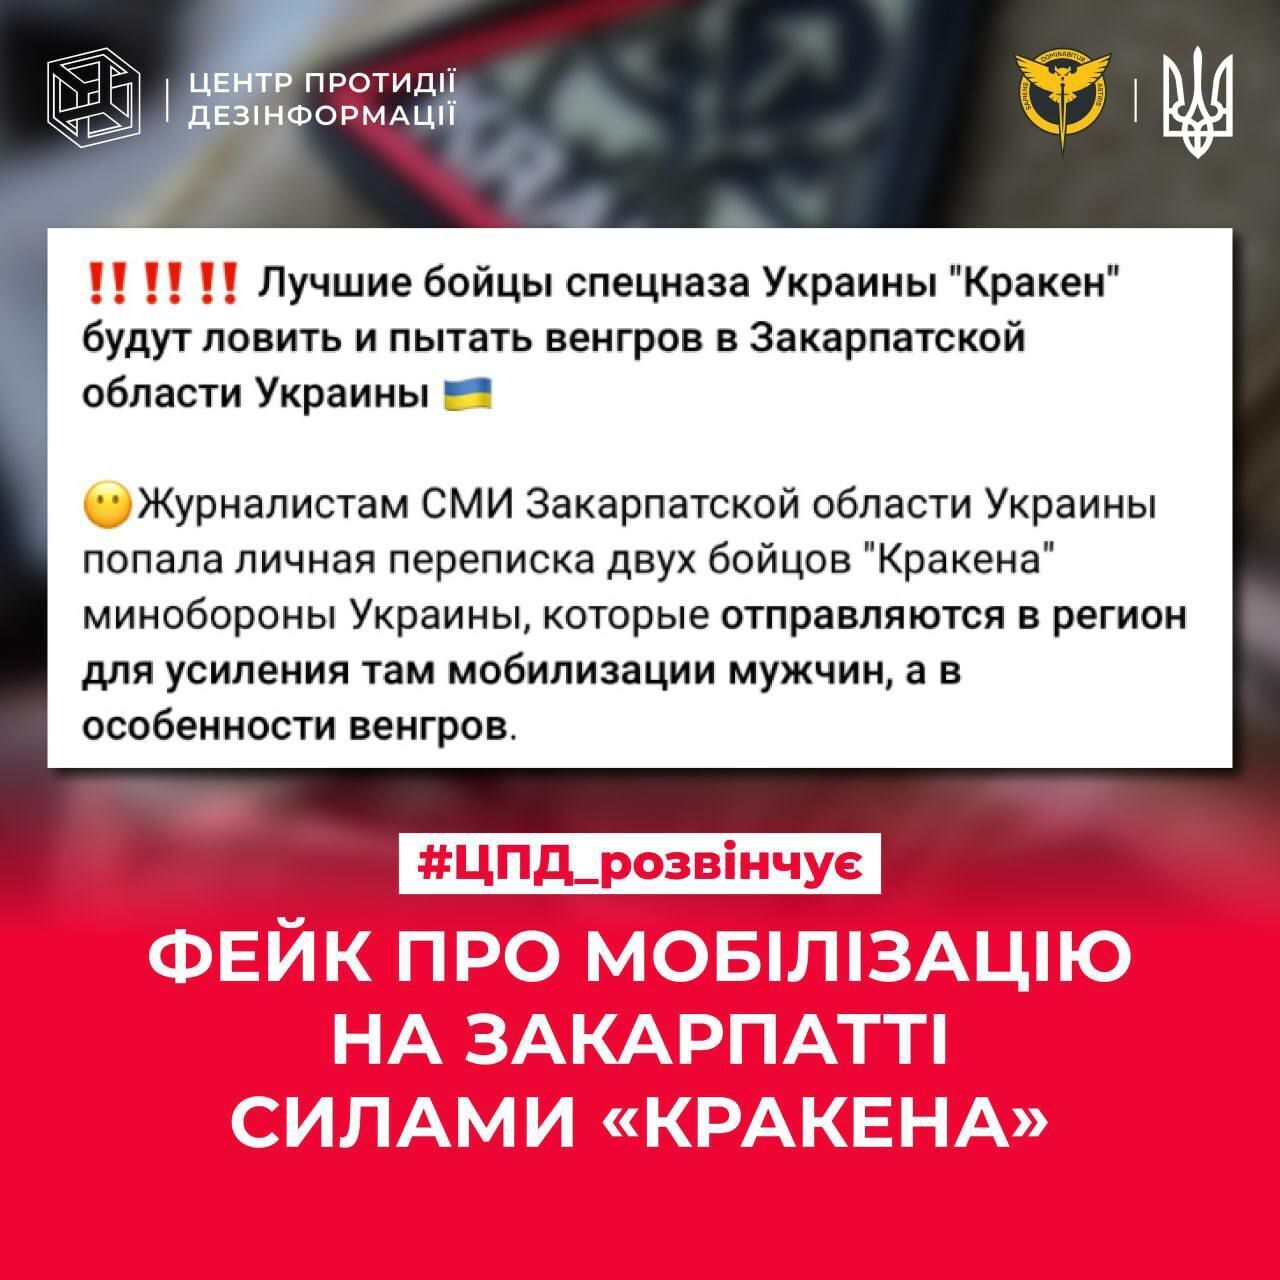 В ГУР і ЦПД спростували черговий фейк російської пропаганди: бійці спецпідрозділу "Кракен" не займаються мобілізацією на Закарпатті